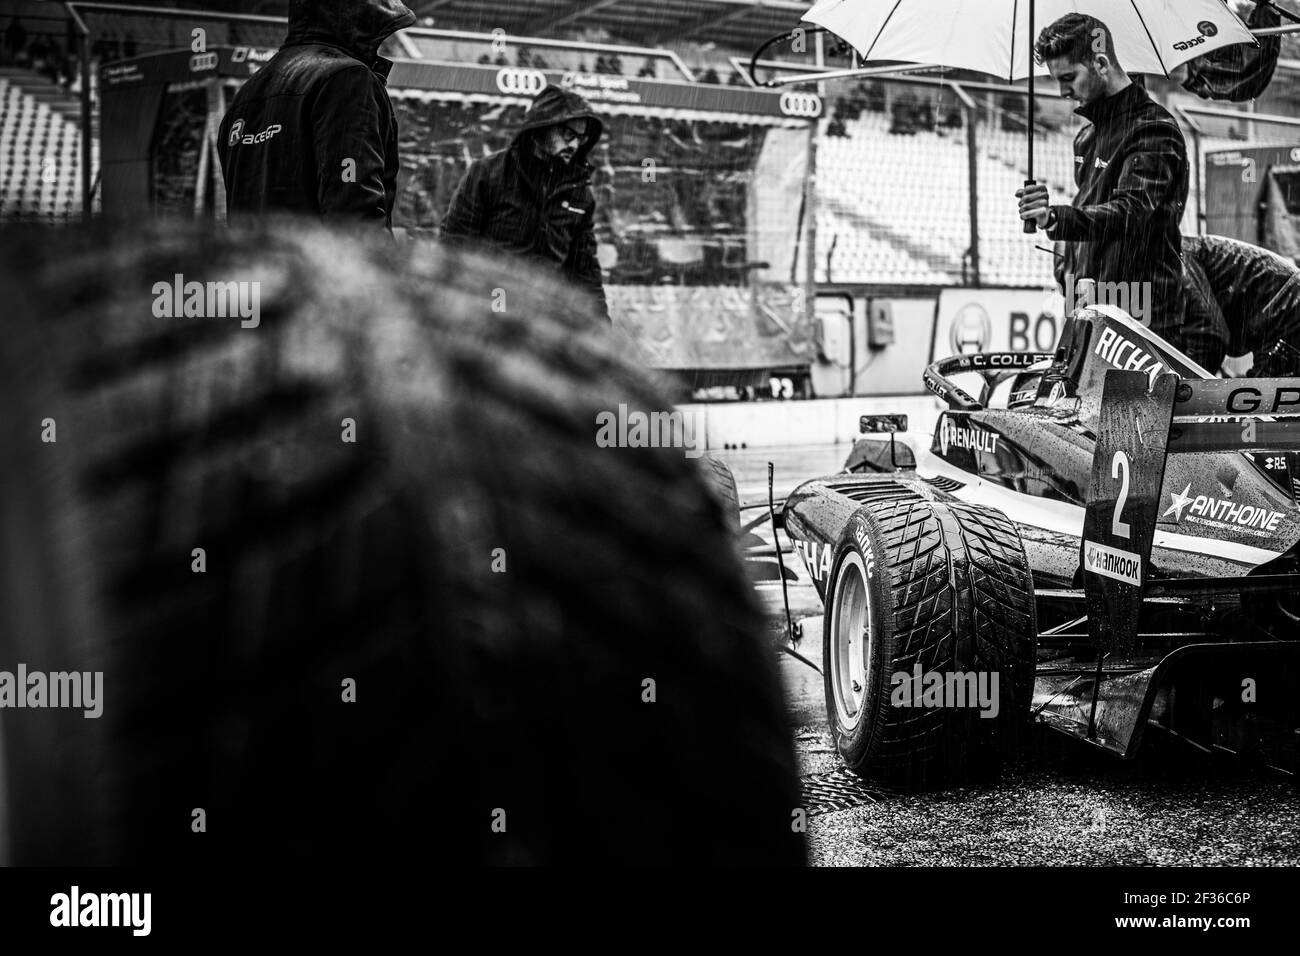 COLLETTO Caio (BRA), GP R-ACE (fra), ritratto durante la Formula Renault Eurocup 2019 a Hockenheim dal 4 al 6 ottobre, in Germania - Foto Clemente Luck / DPPI Foto Stock